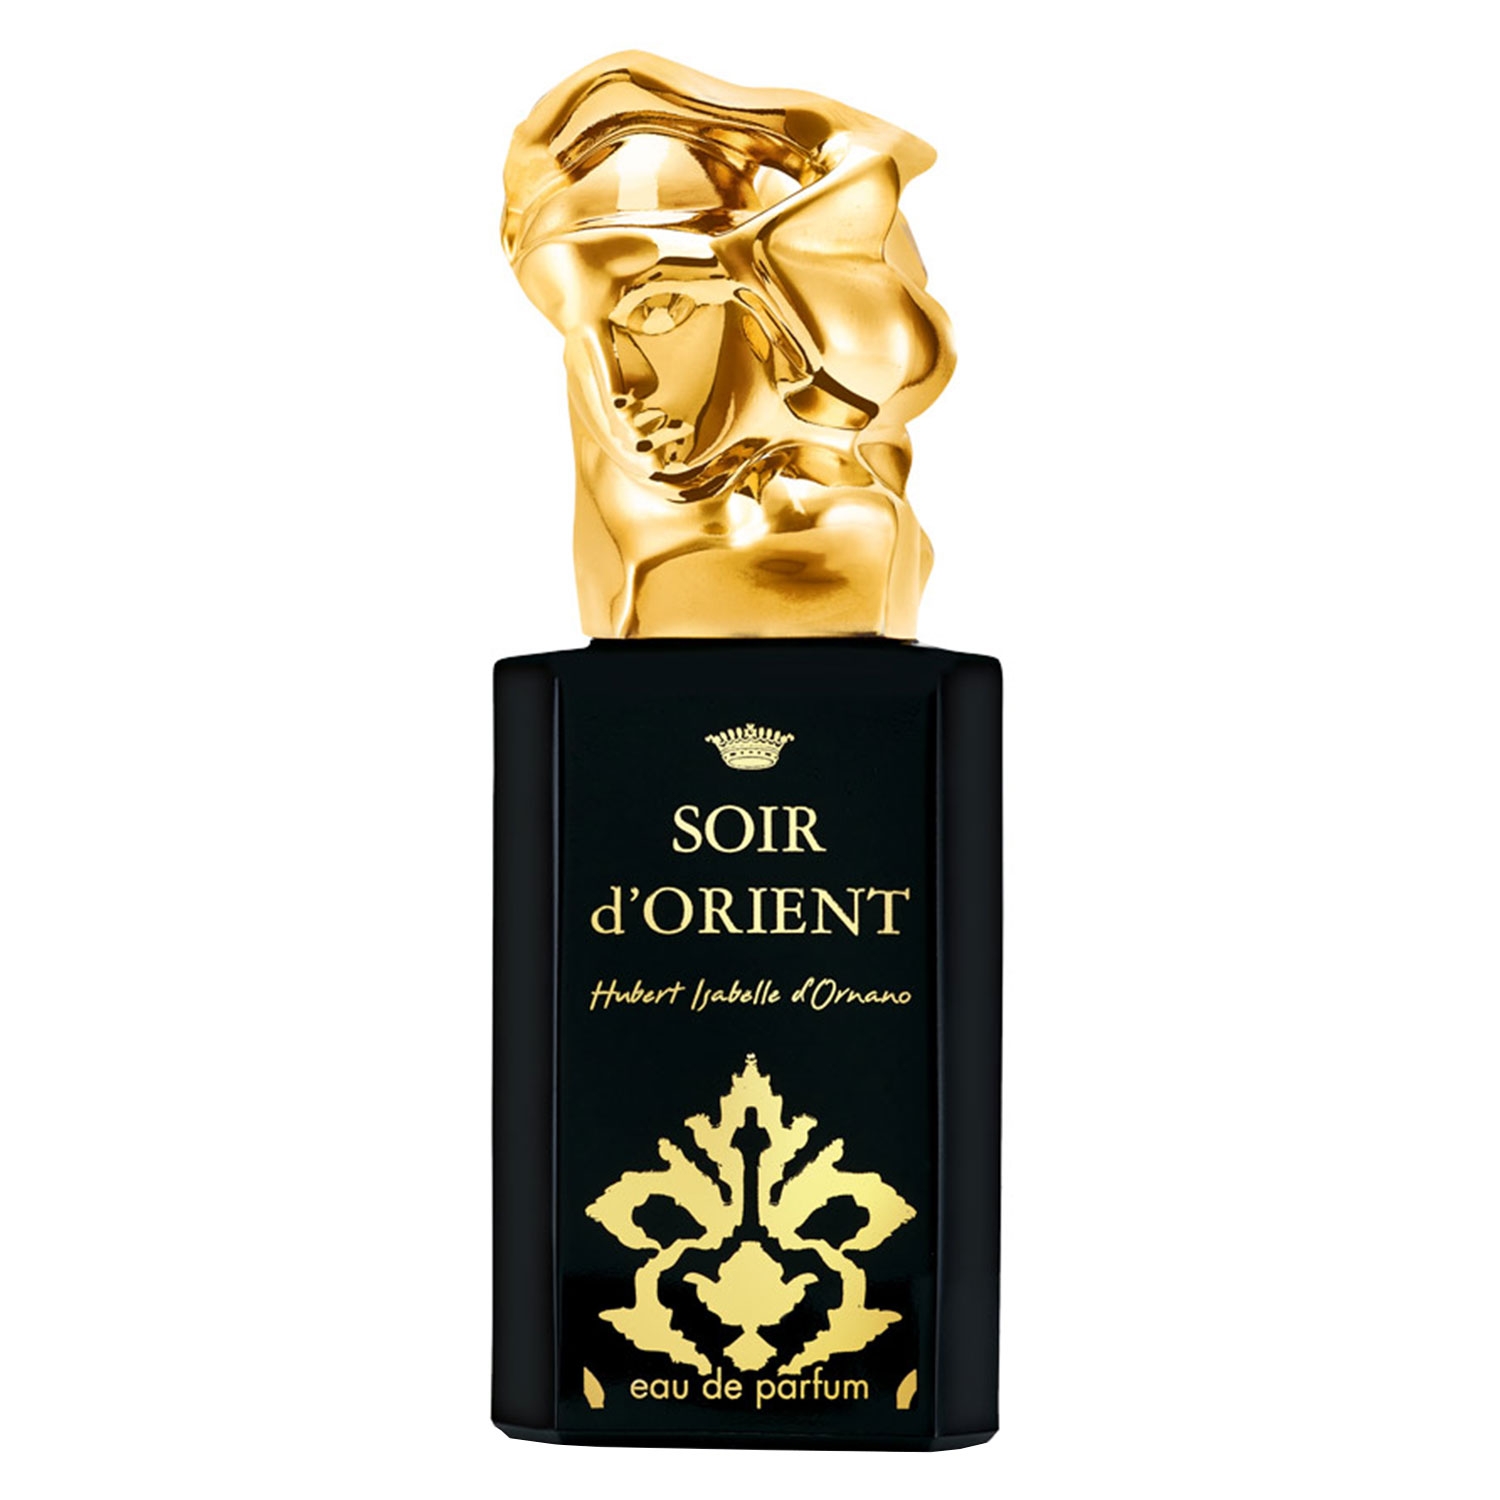 Produktbild von Sisley Fragrance - Soir d'Orient Eau de Parfum